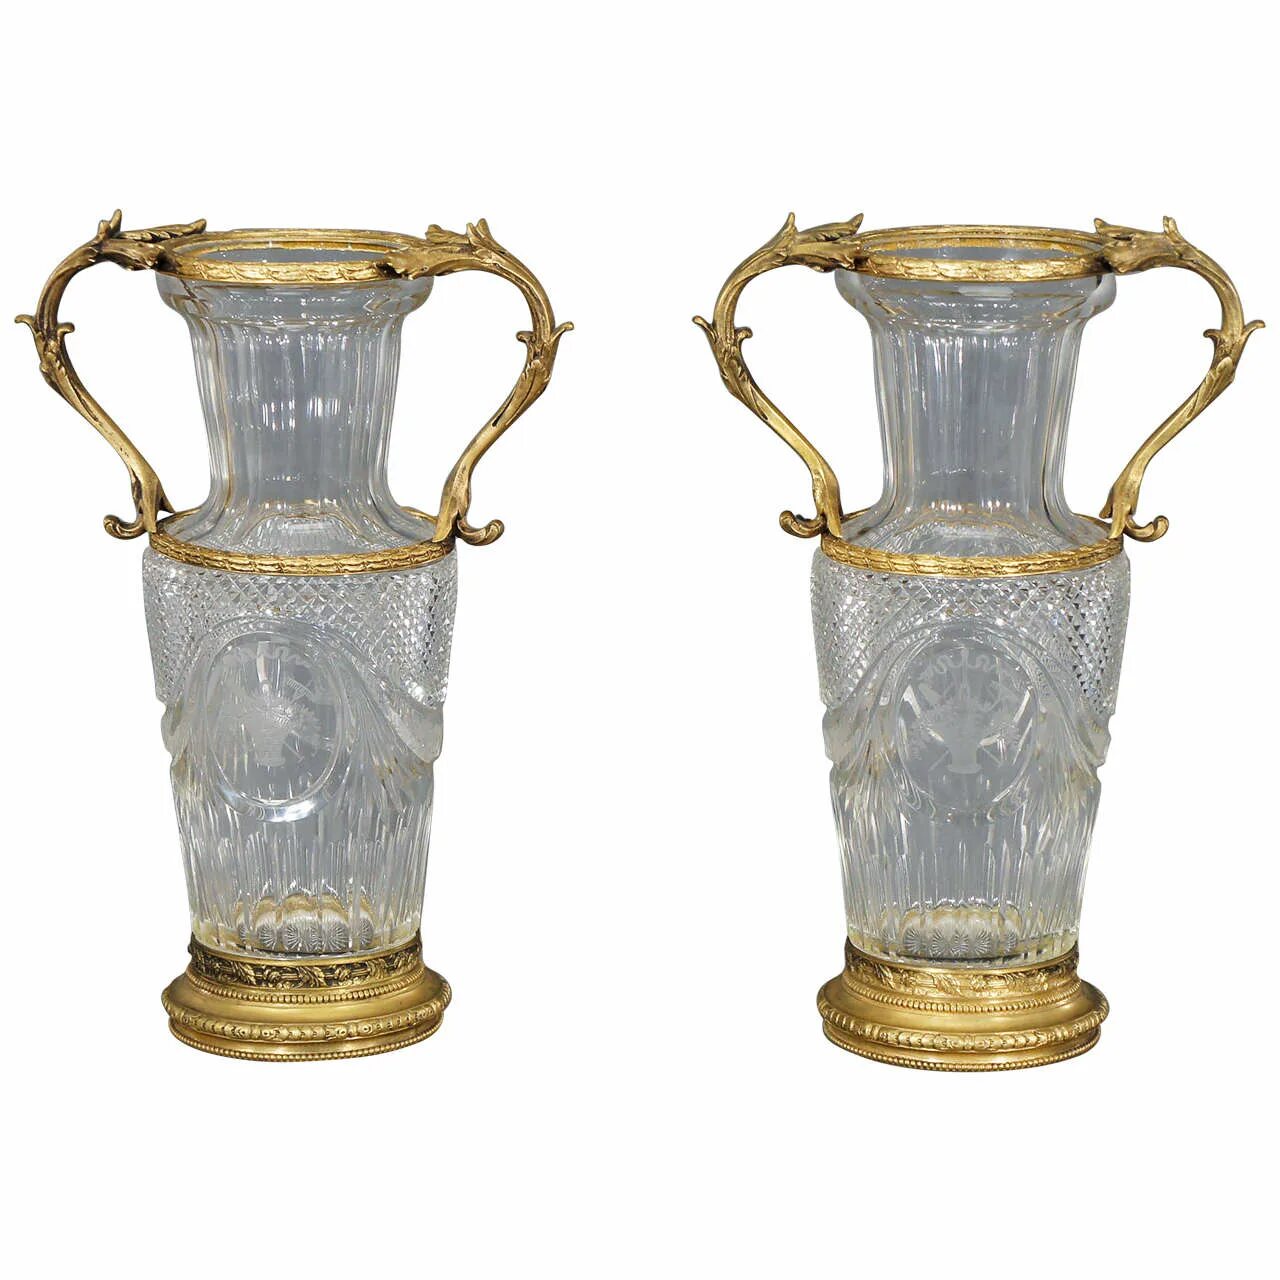 Баккара ваза цена. Ваза Baccarat Antique. Баккара хрустальные вазы. Хрустальные вазы 19 века баккара. Ваза баккара оригинал.